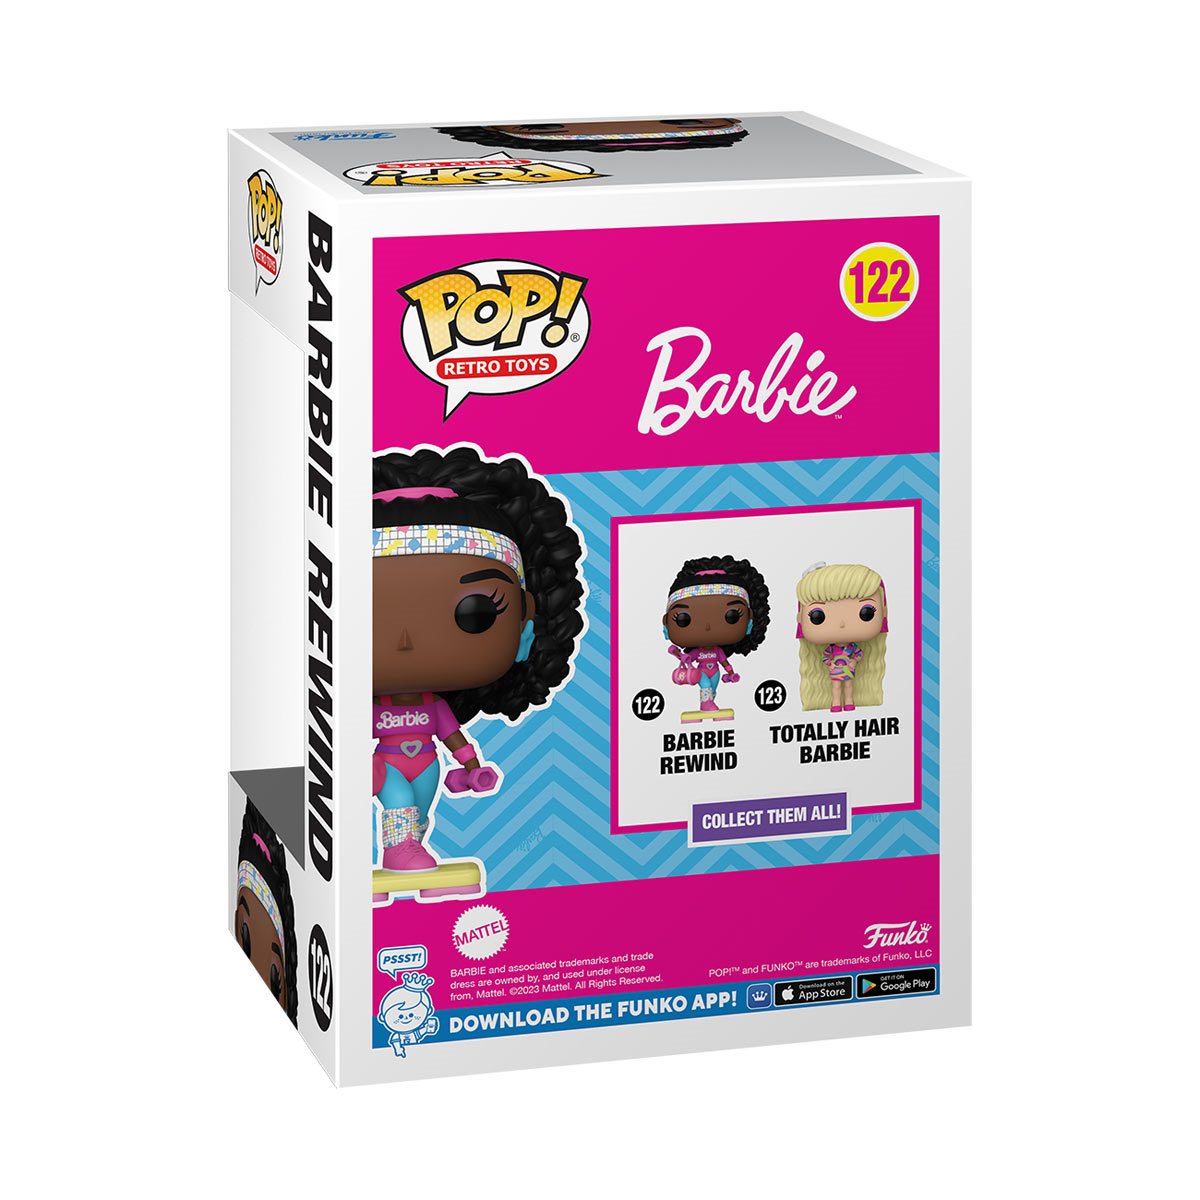 Funko Pop! Barbie Rewind Vinyl Figure #122